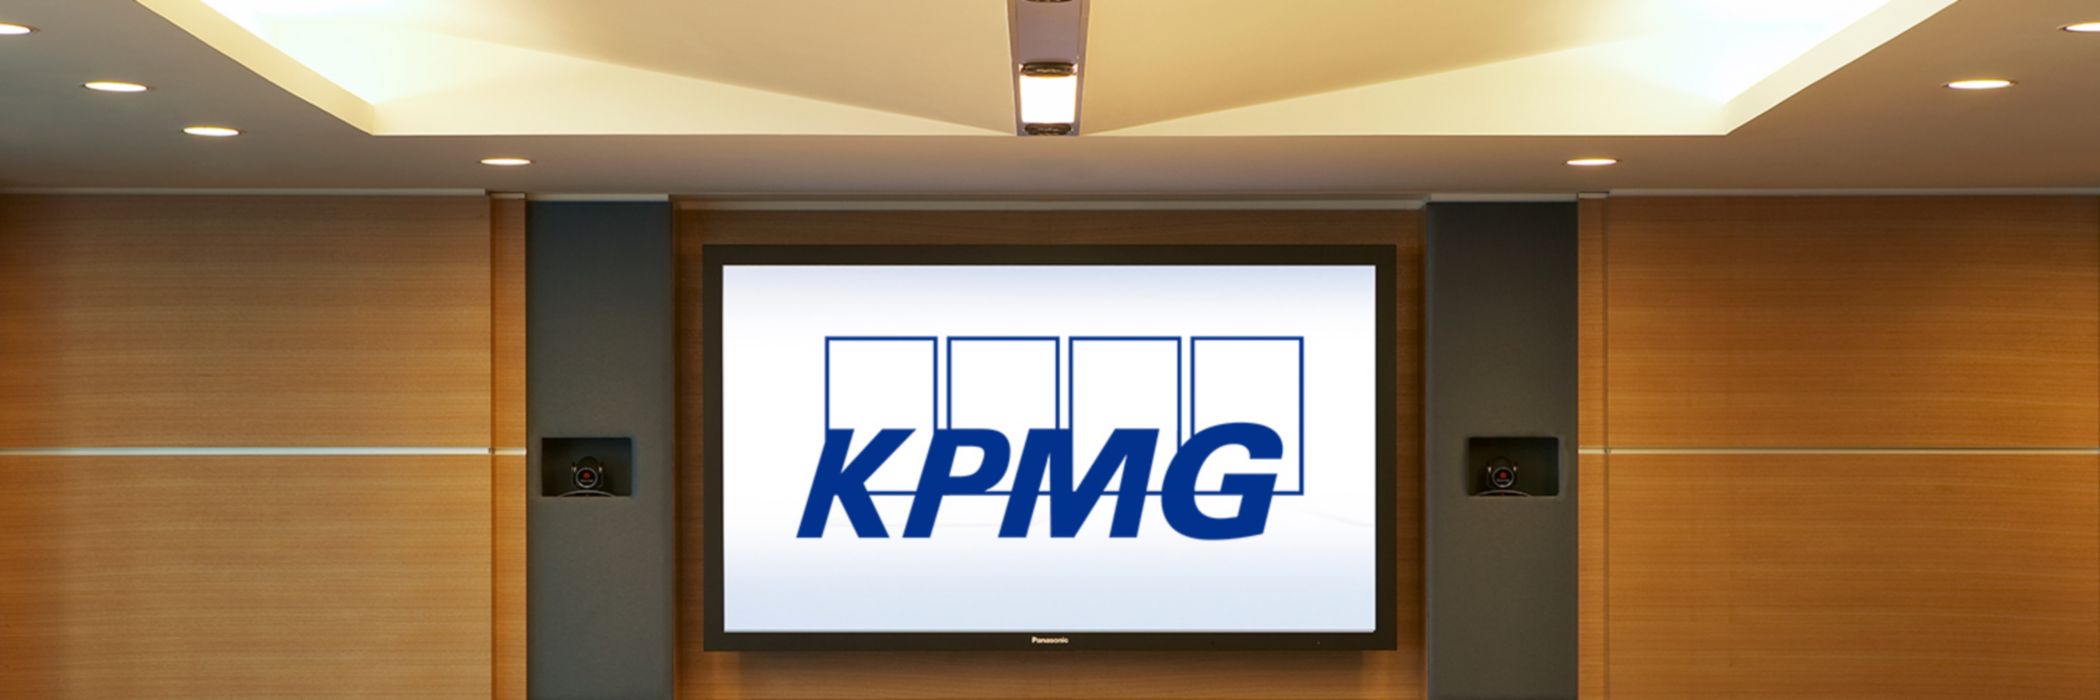 KPMG Office